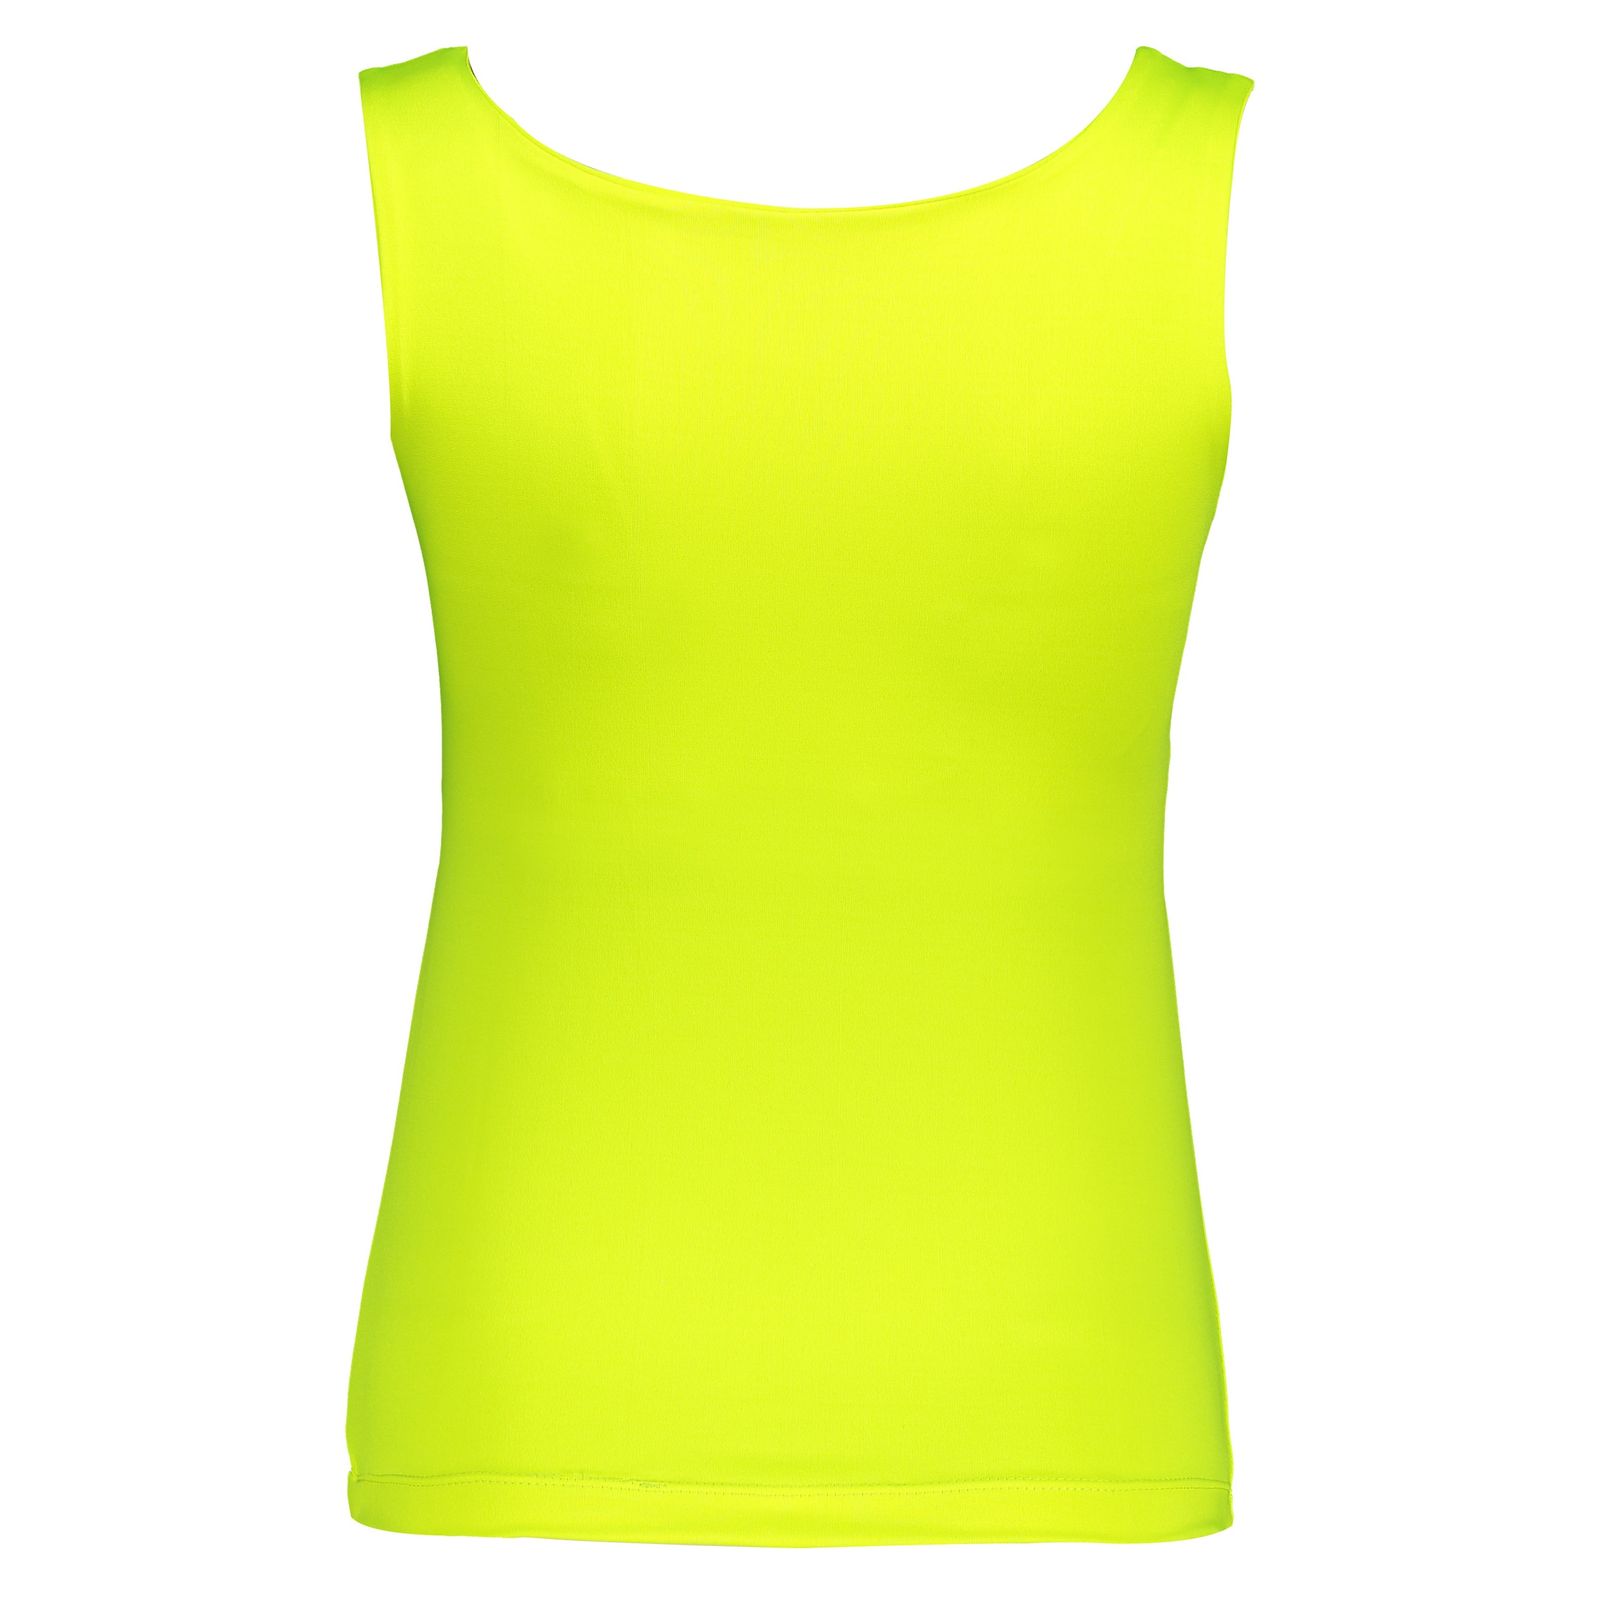 تاپ ورزشی زنانه آر ان اس مدل 2101026-16 - زرد - 4